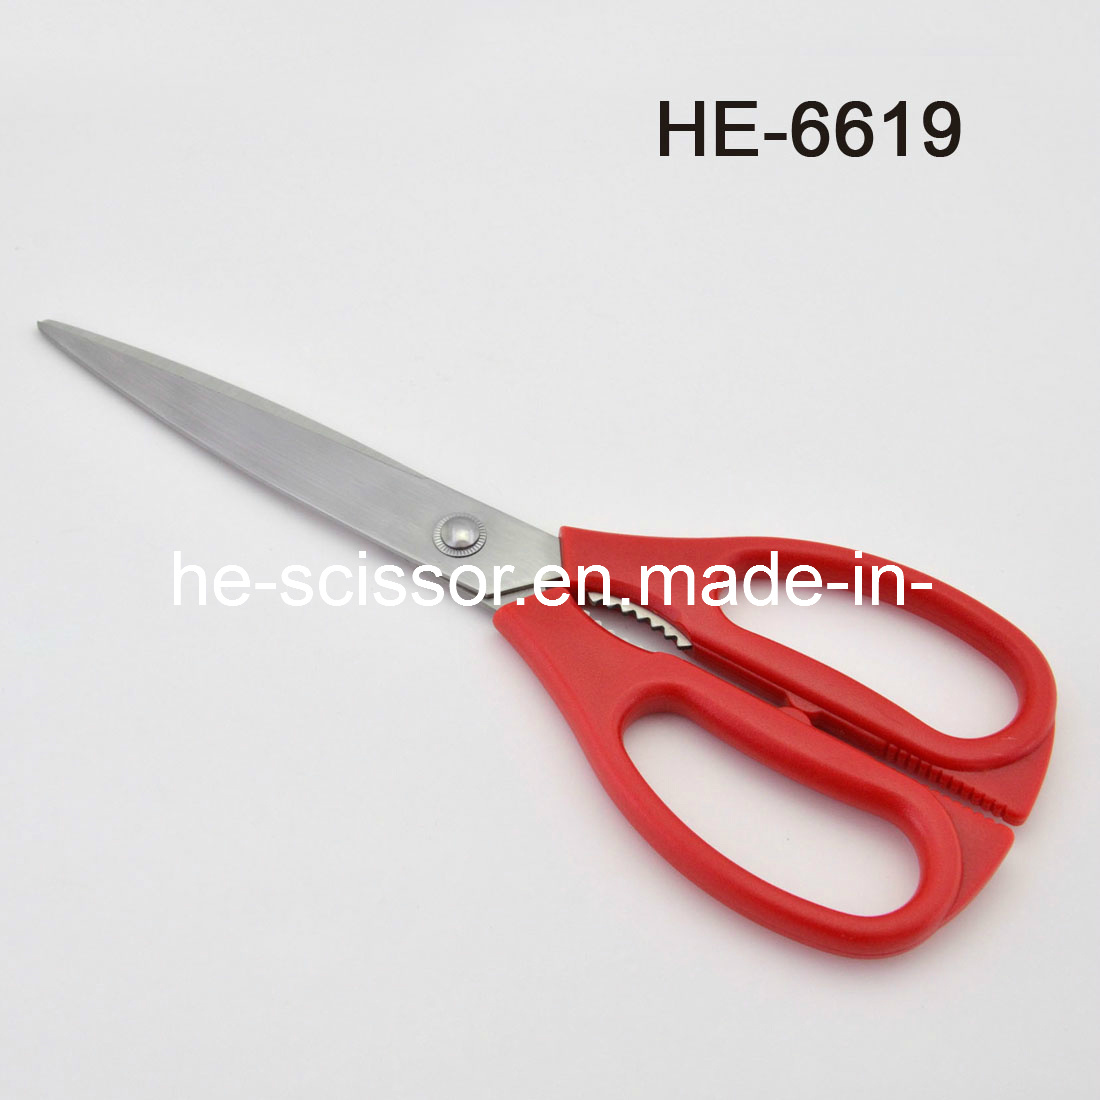 Useful Kithcen Scissors (HE-6619)